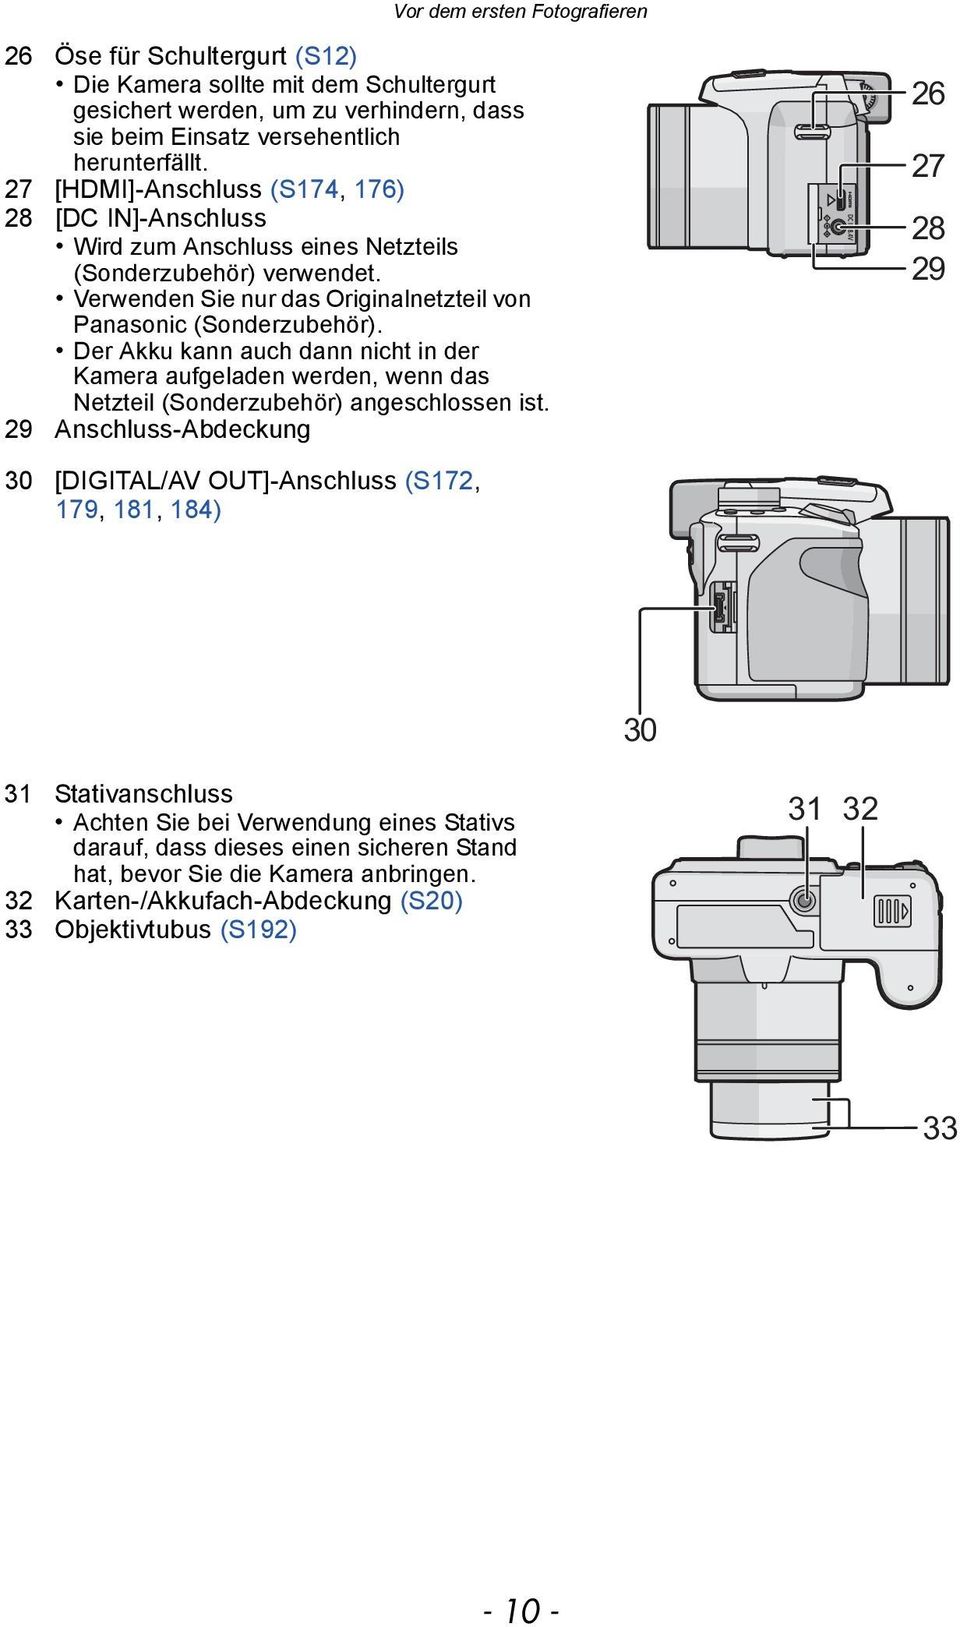 Der Akku kann auch dann nicht in der Kamera aufgeladen werden, wenn das Netzteil (Sonderzubehör) angeschlossen ist.